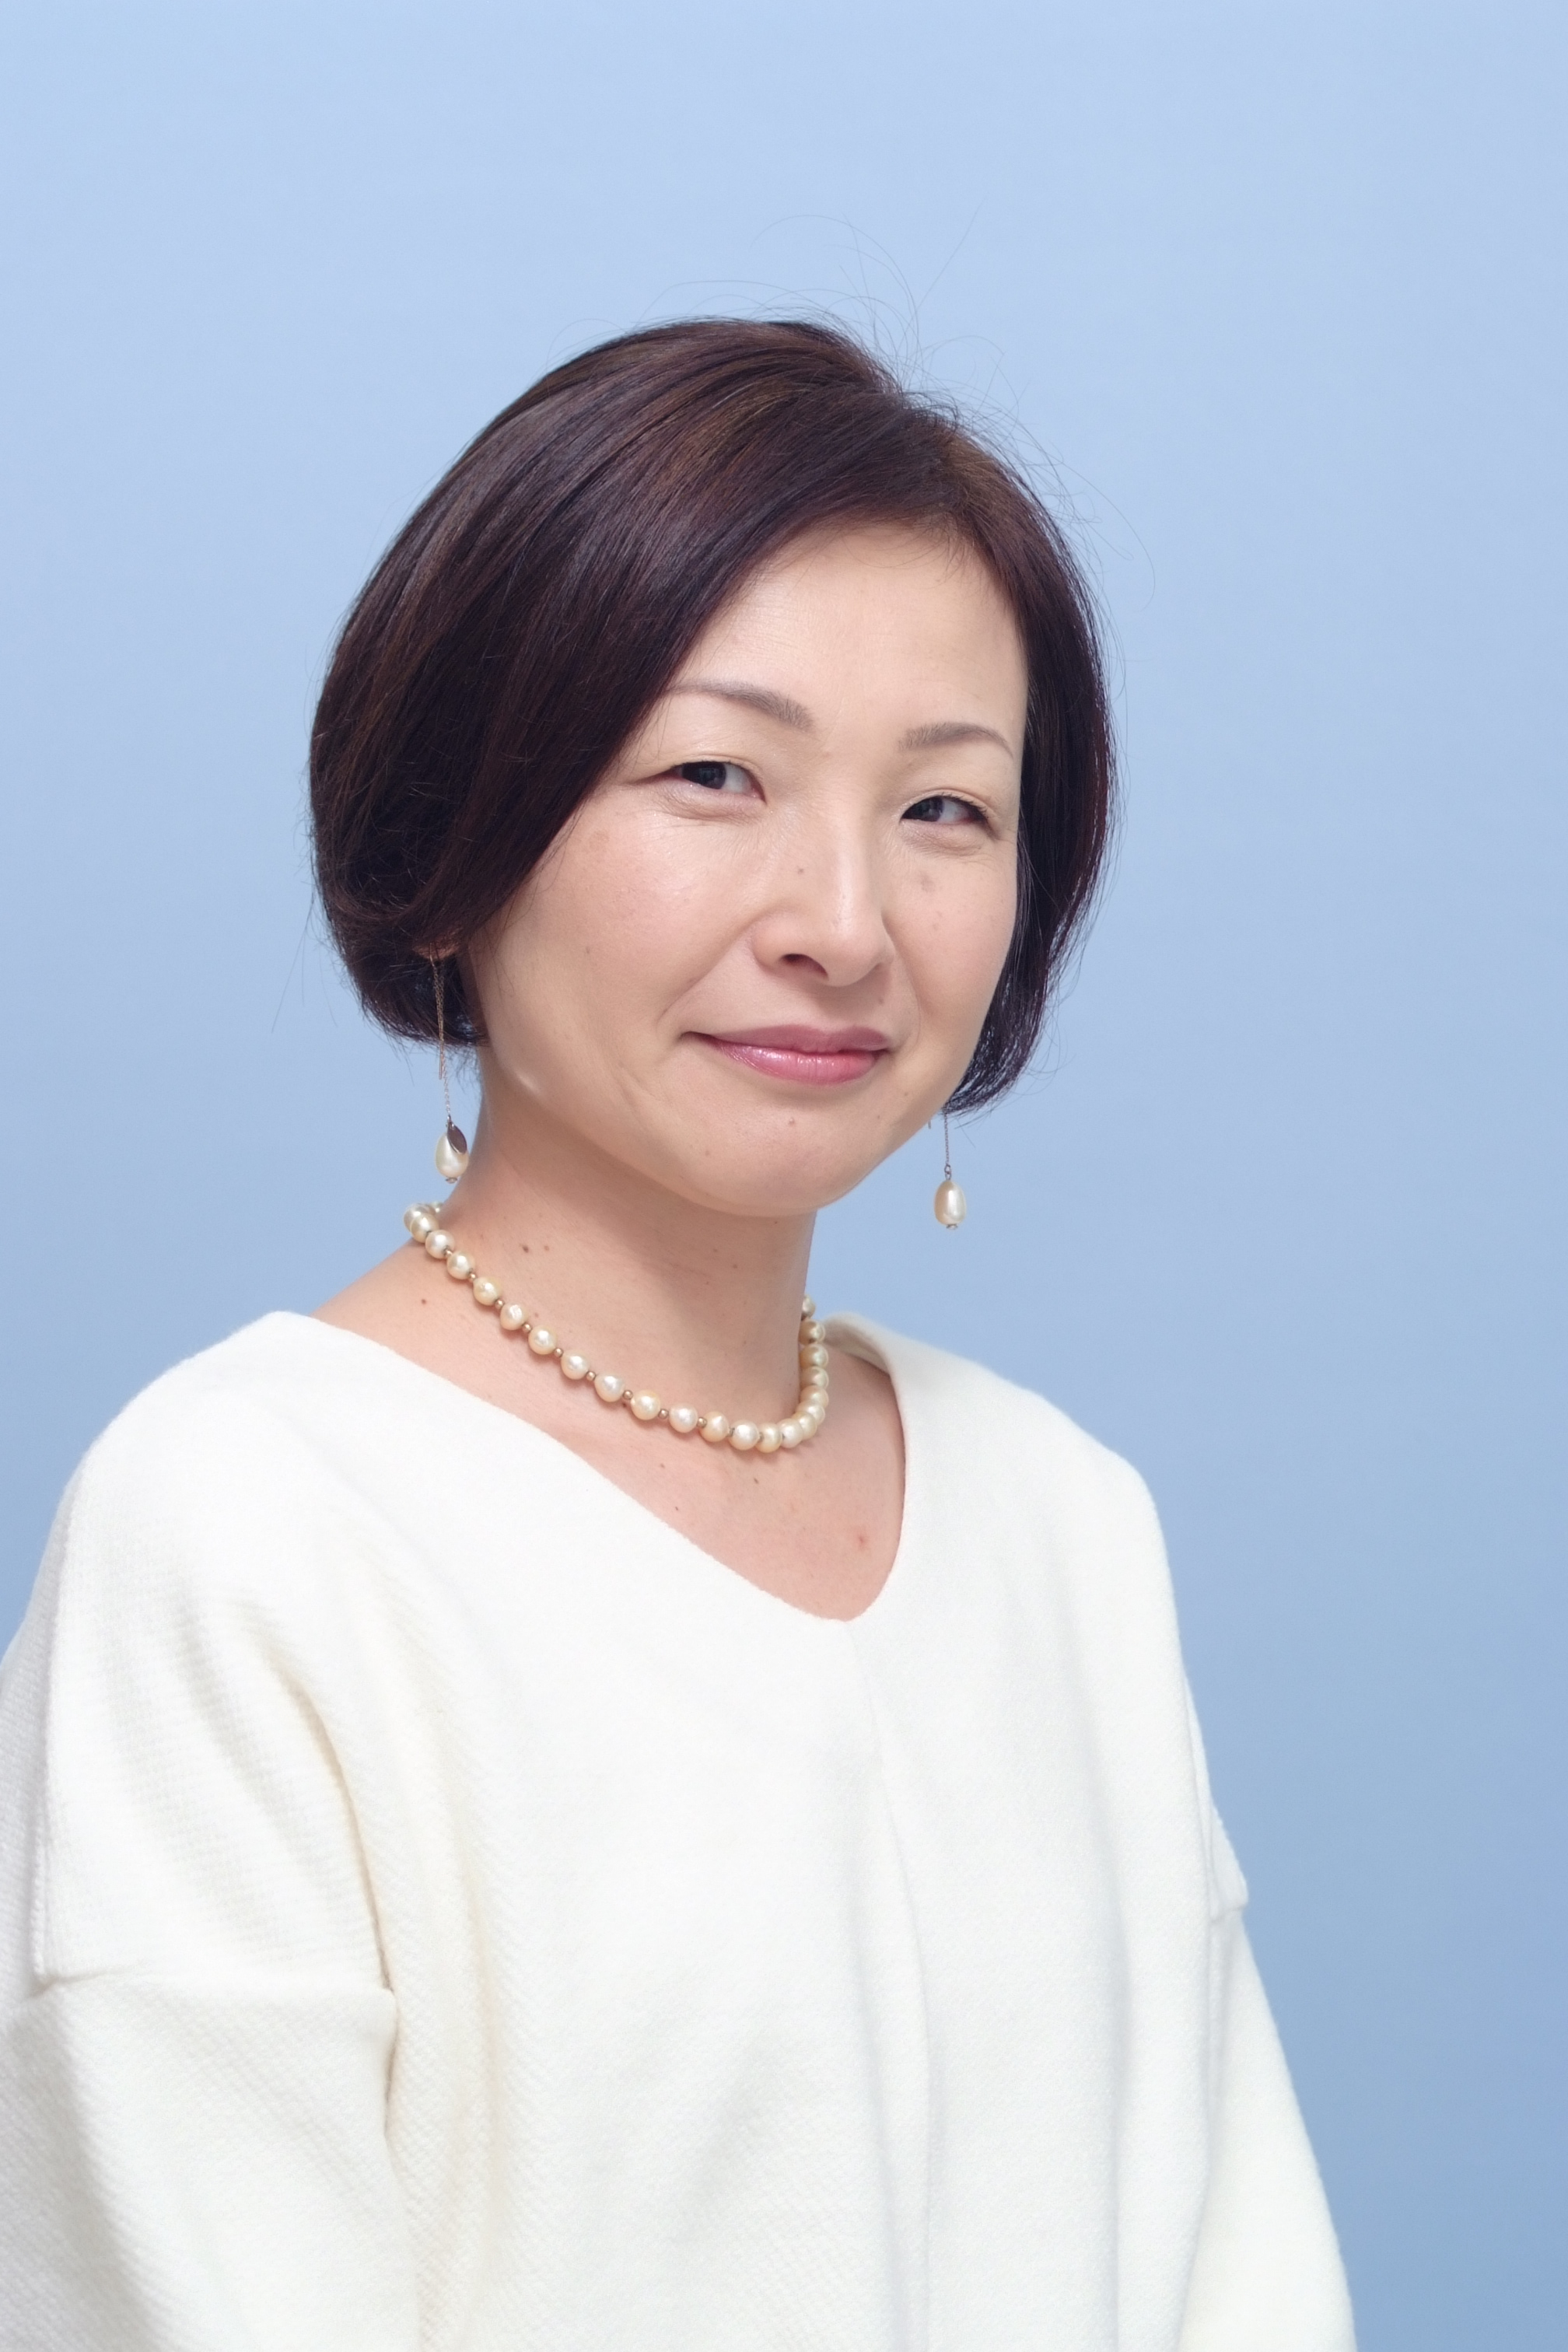 Saeko Honma